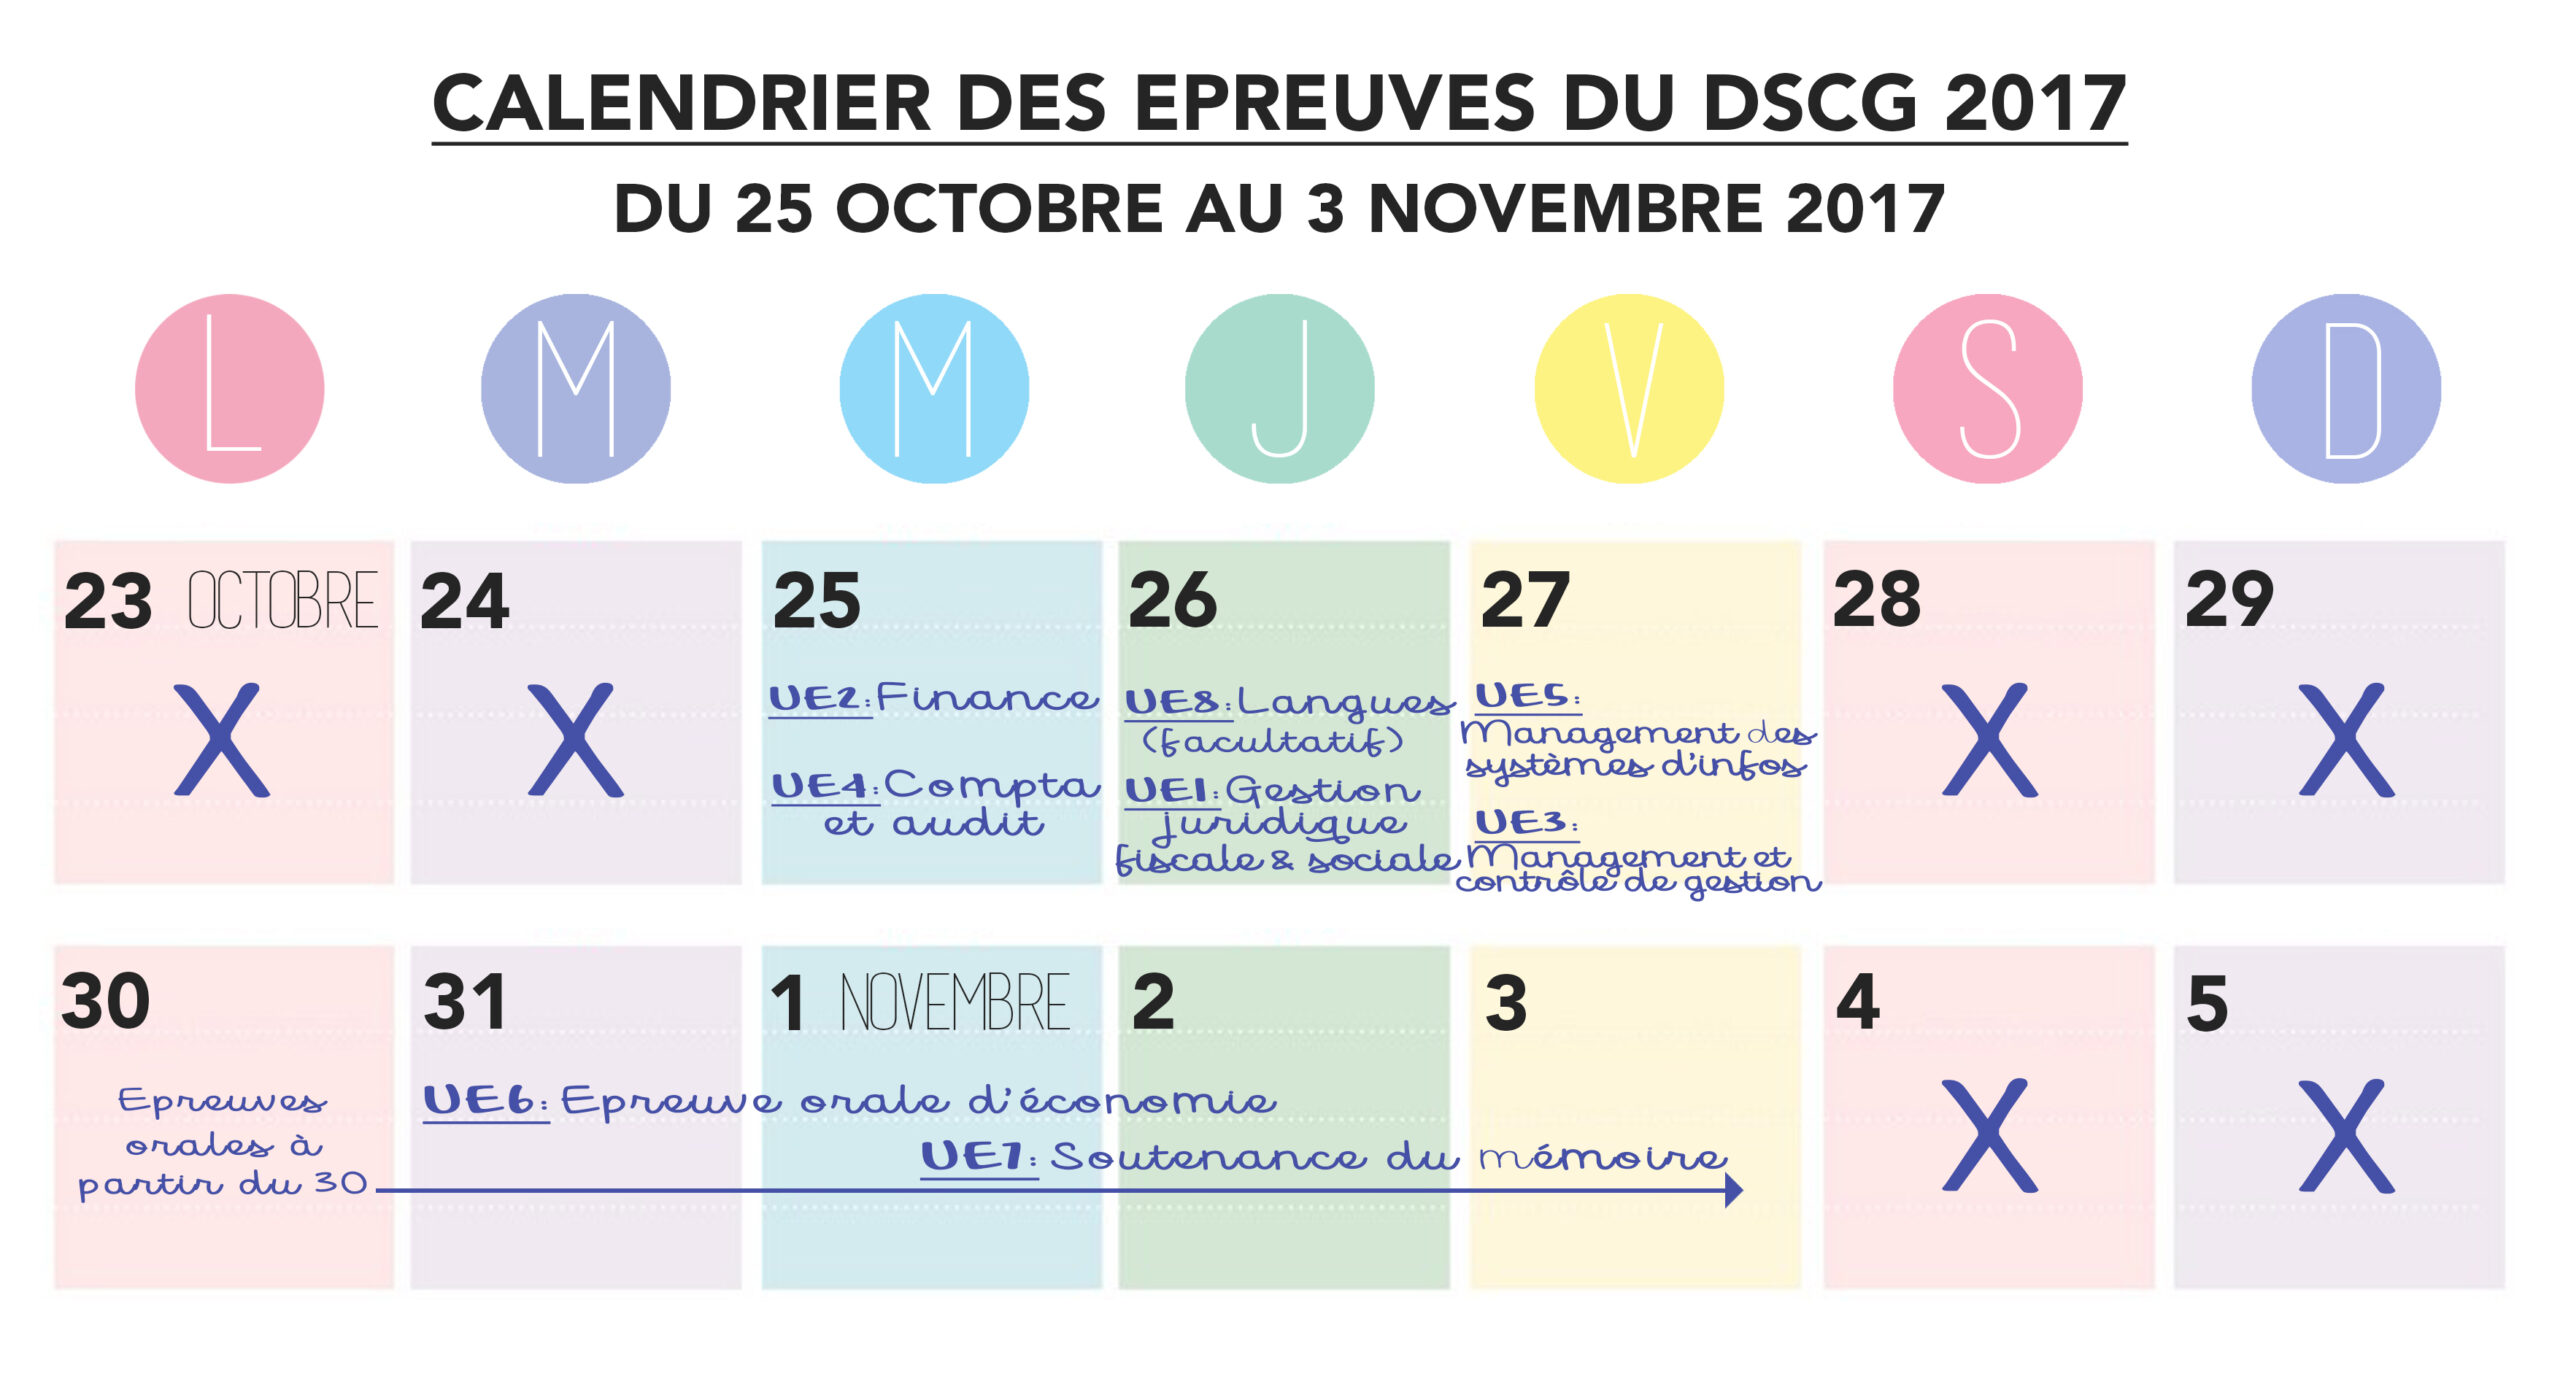 Le calendrier des épreuves du DSCG 2017